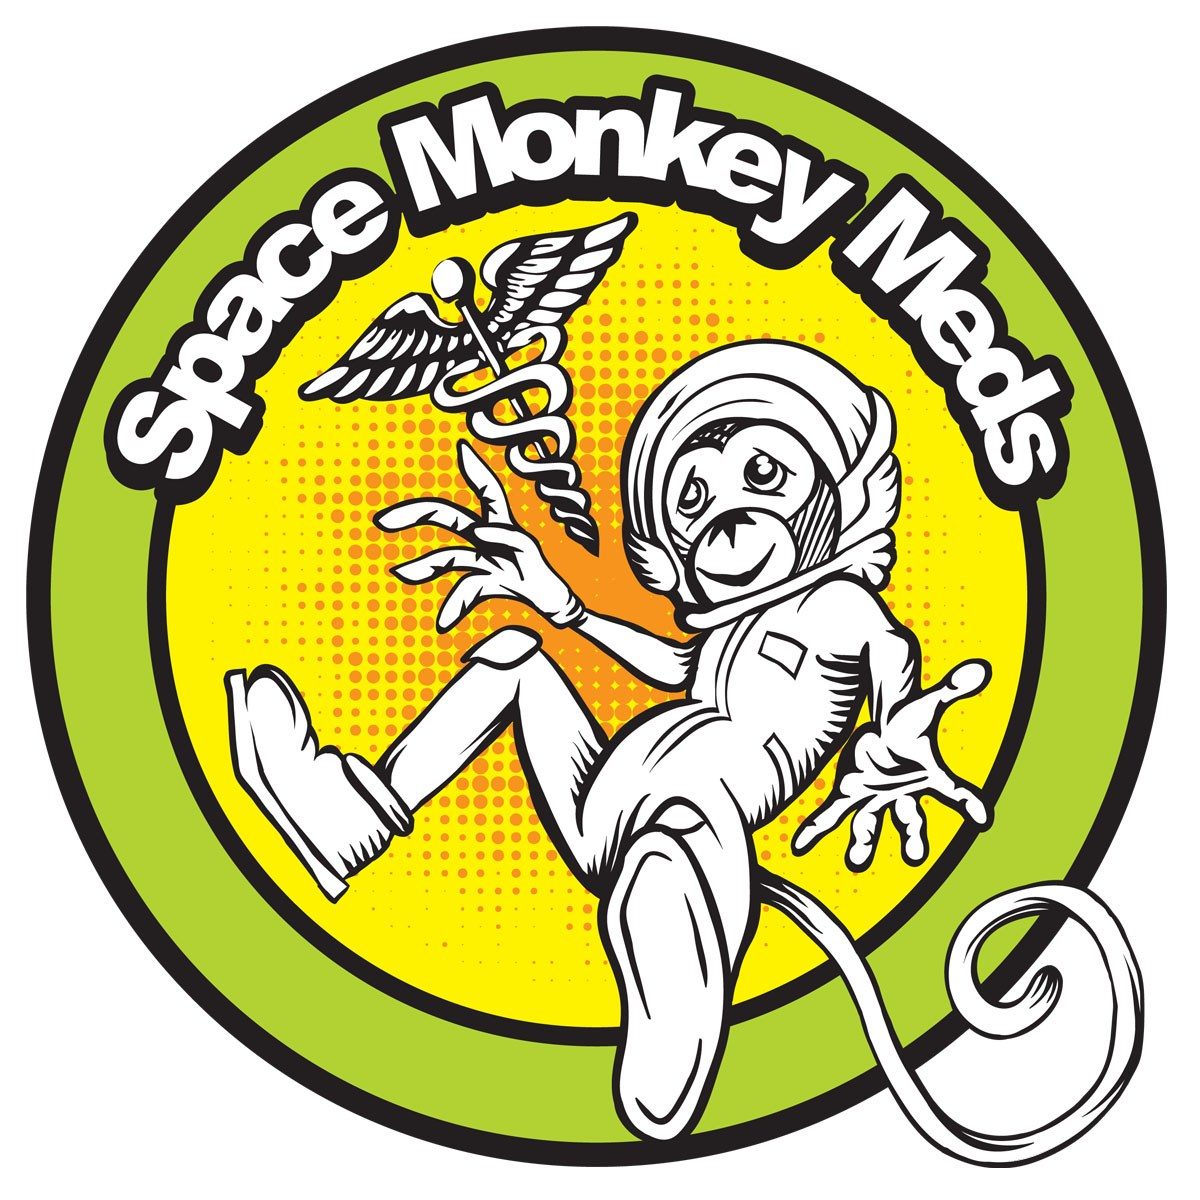 Space monkey. Space Monkey ашка. Space Monkey Одноразка. Space Monkey Гоа. Monkey Space диджей.